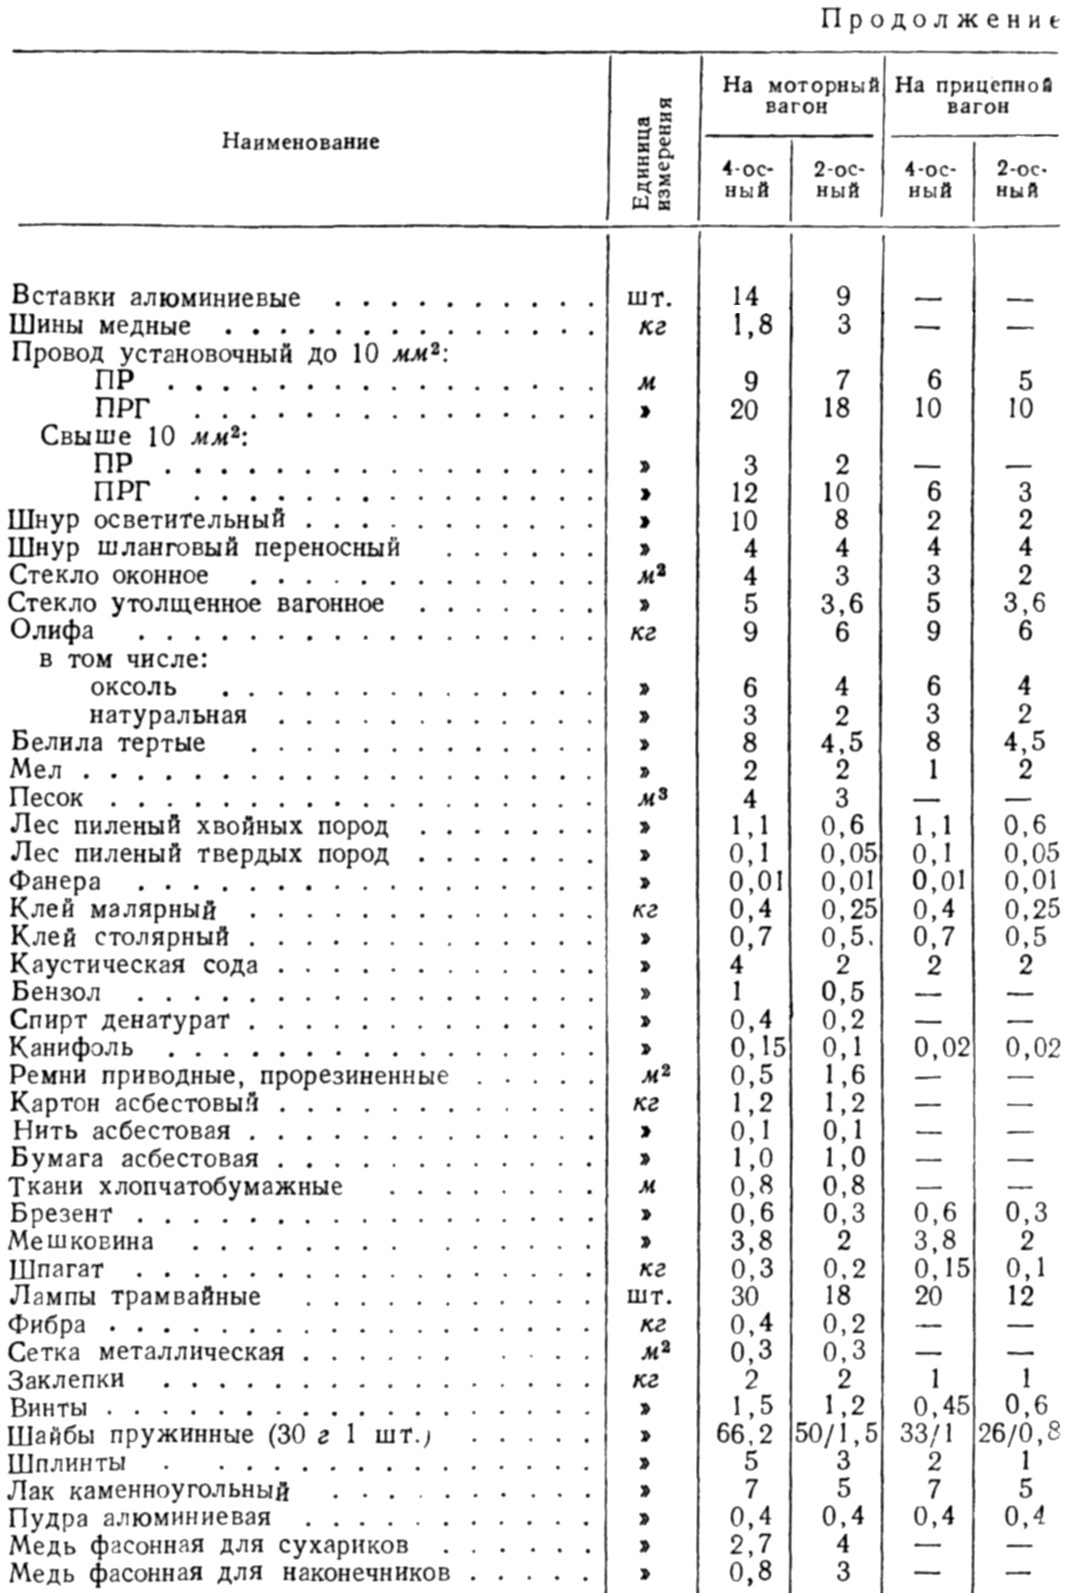 Таблица 152 - Ориентировочные нормы расхода основных материалов для эксплуатации трамвайных вагонов (расход на 100 тыс. ваг.-км пробега)